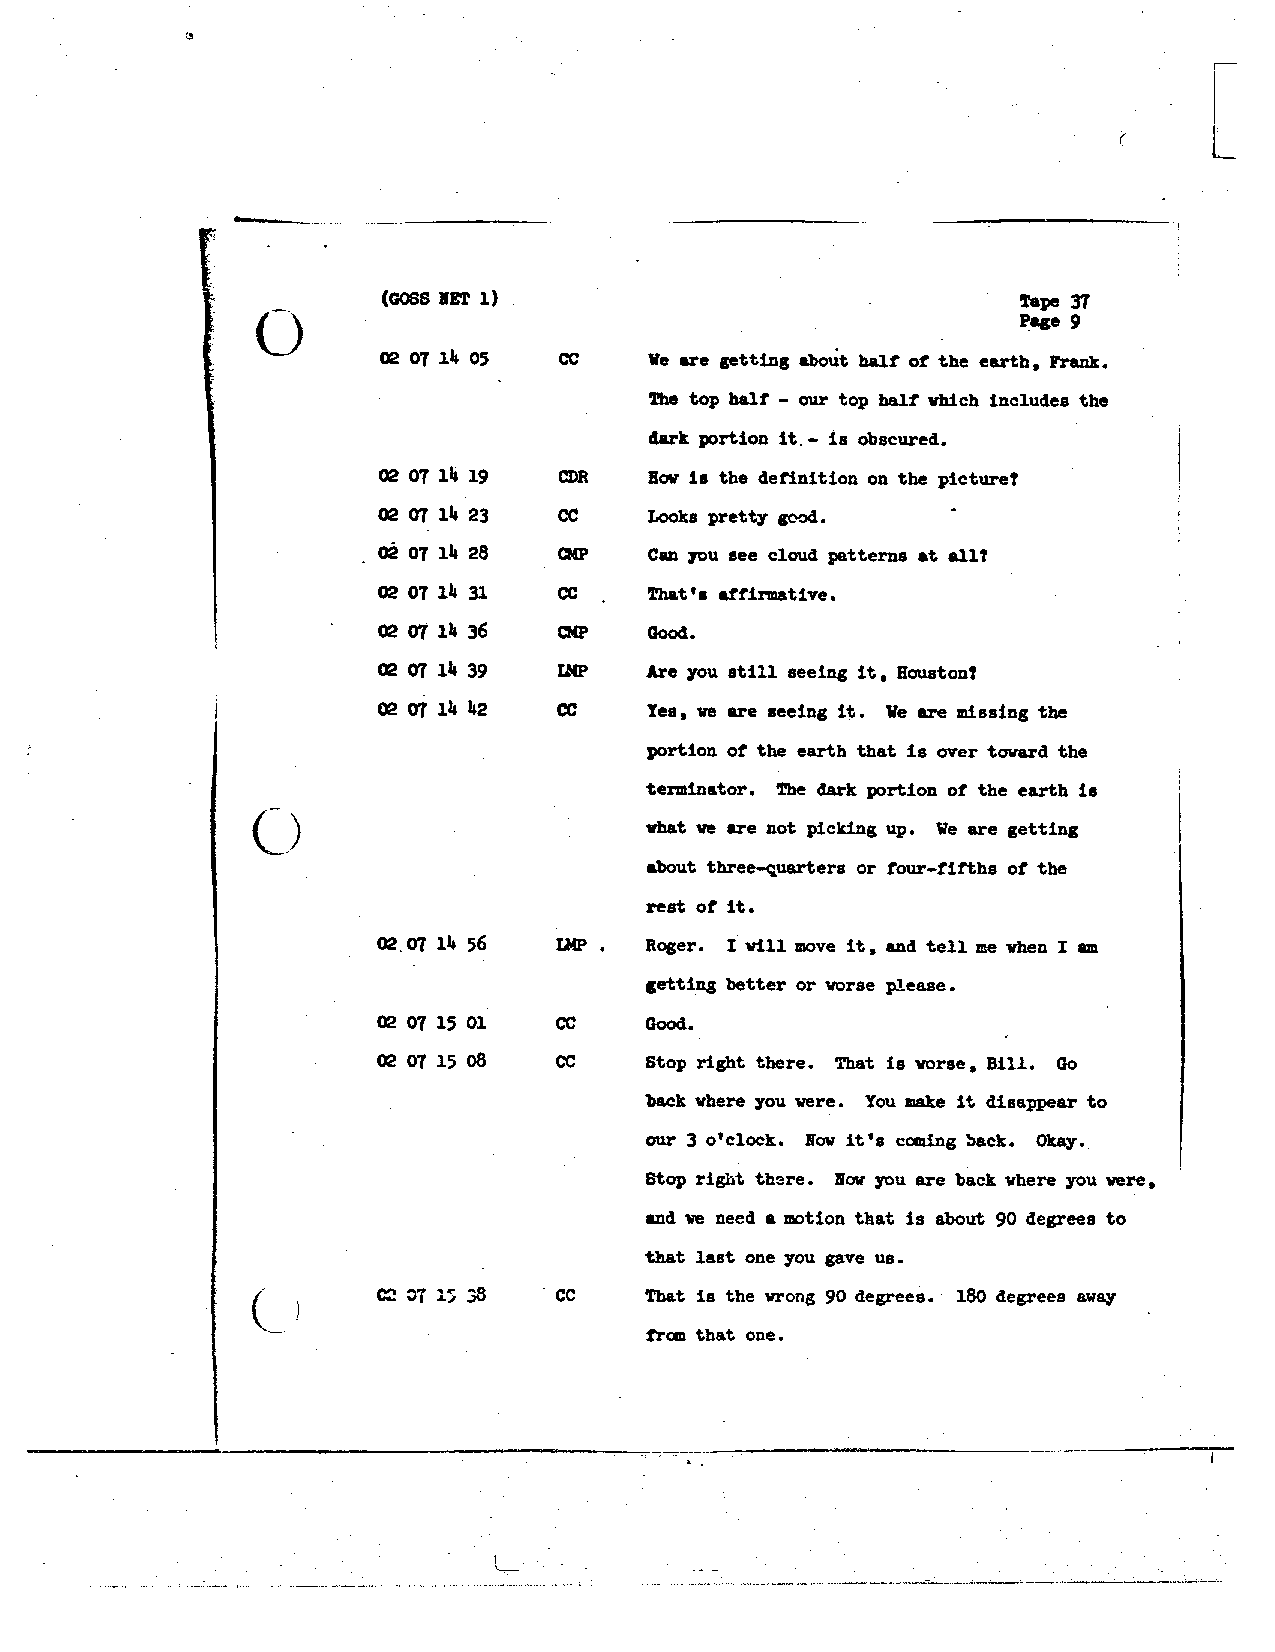 Page 291 of Apollo 8’s original transcript